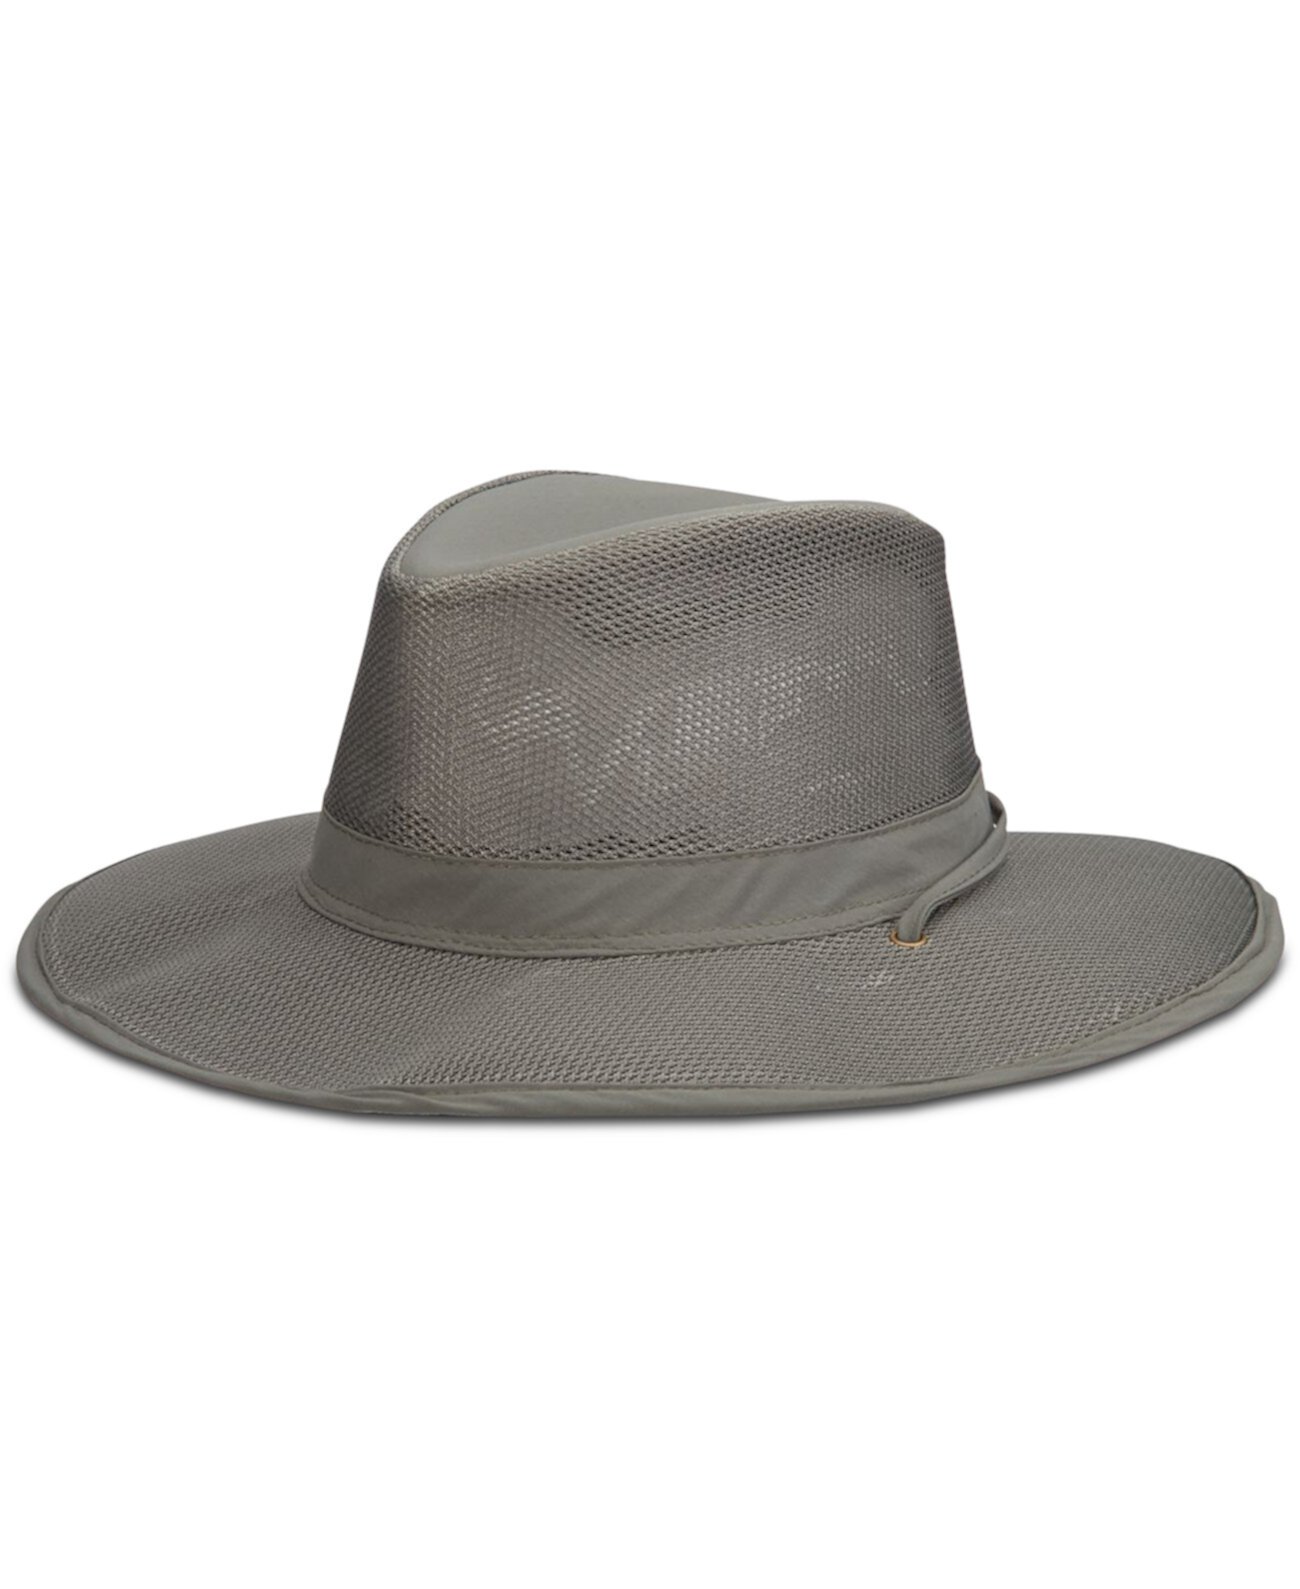 Мужская шляпа-сетка для сафари Dorfman Pacific